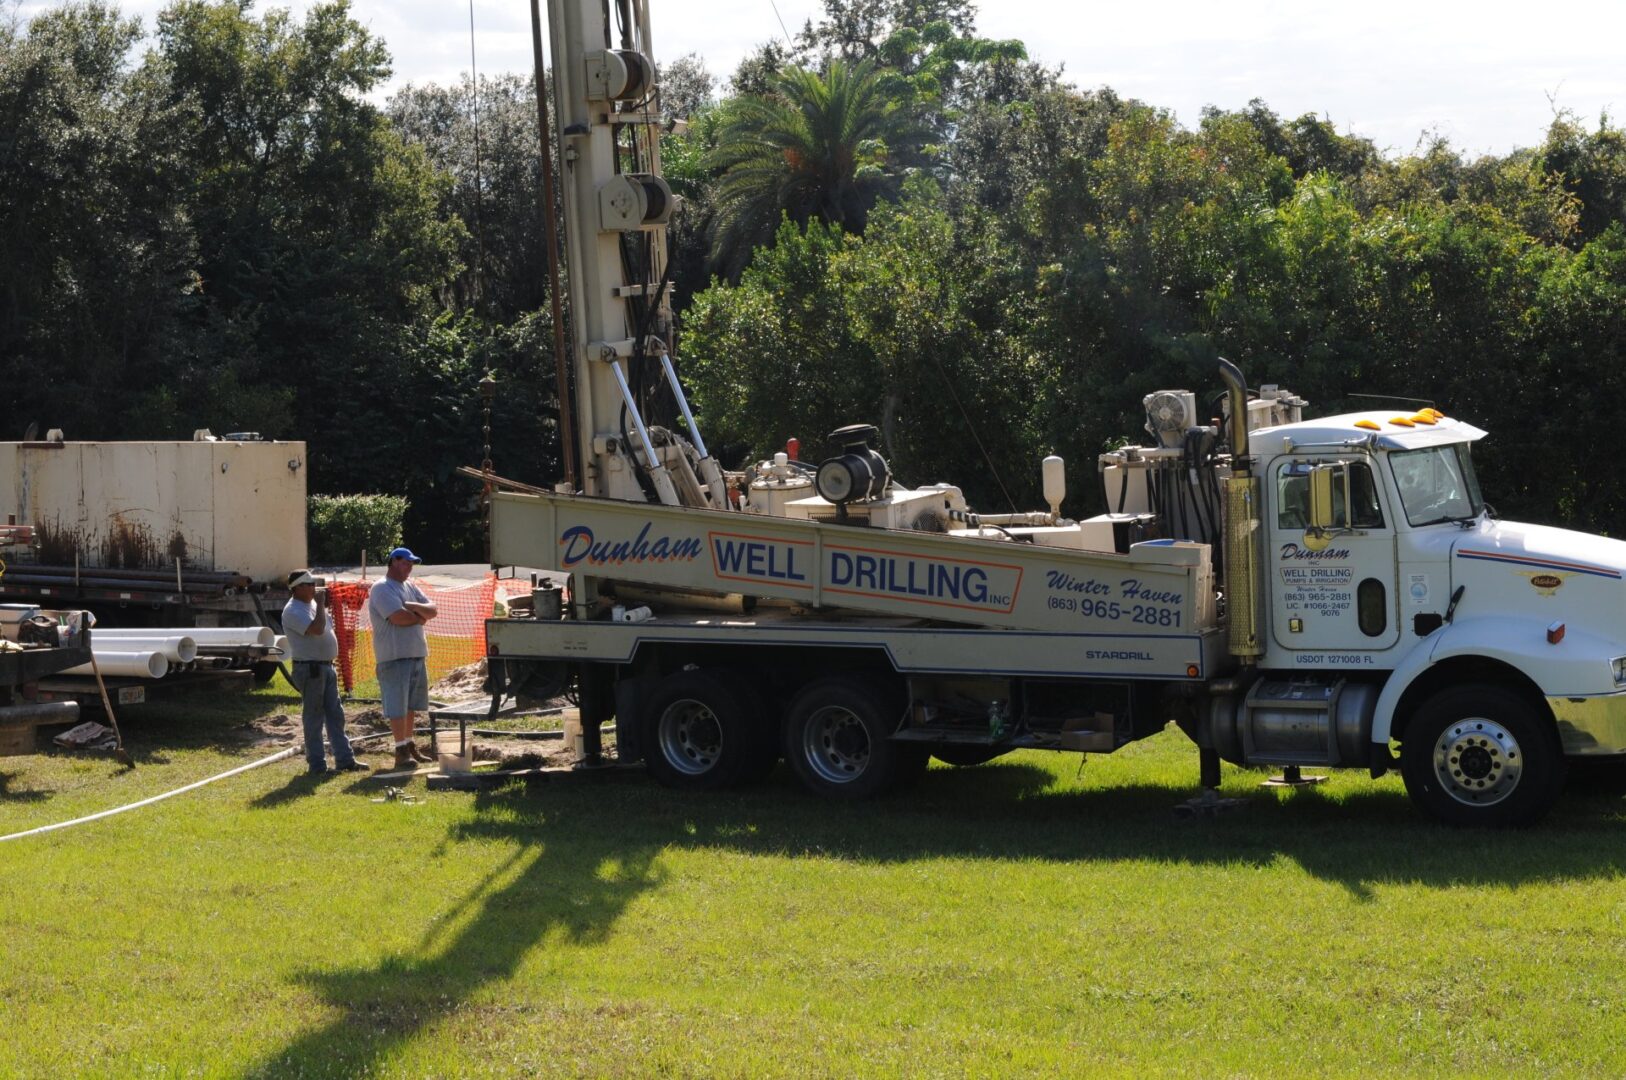 Dunham Well Drilling, Inc.